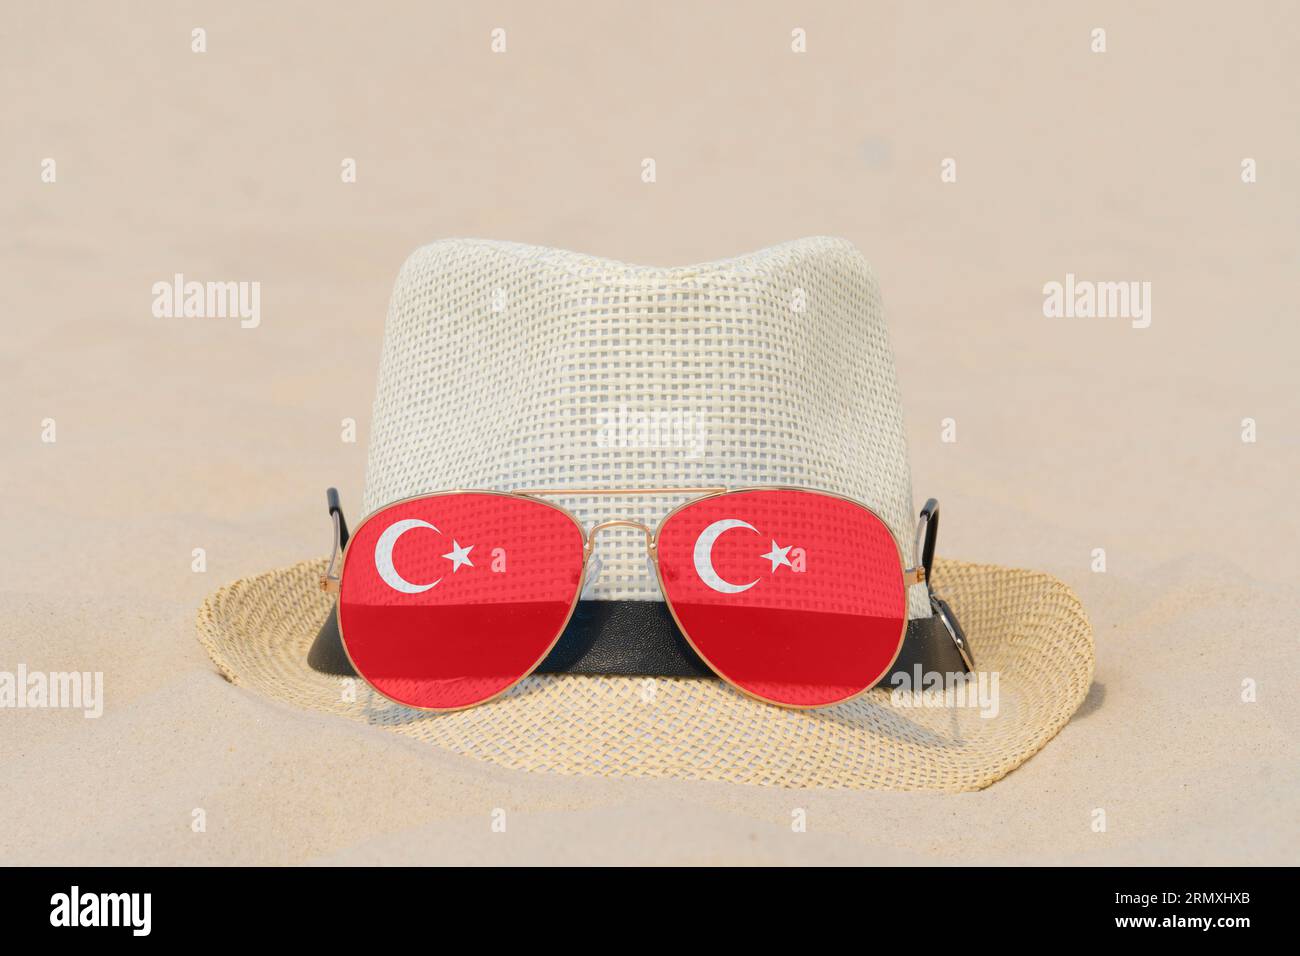 Sonnenbrille mit Gläsern in Form einer türkischen Flagge und einem Hut liegen auf Sand. Konzept von Sommerferien und Reisen in der Türkei. Sommerruhe. Weihnachtszeit Stockfoto